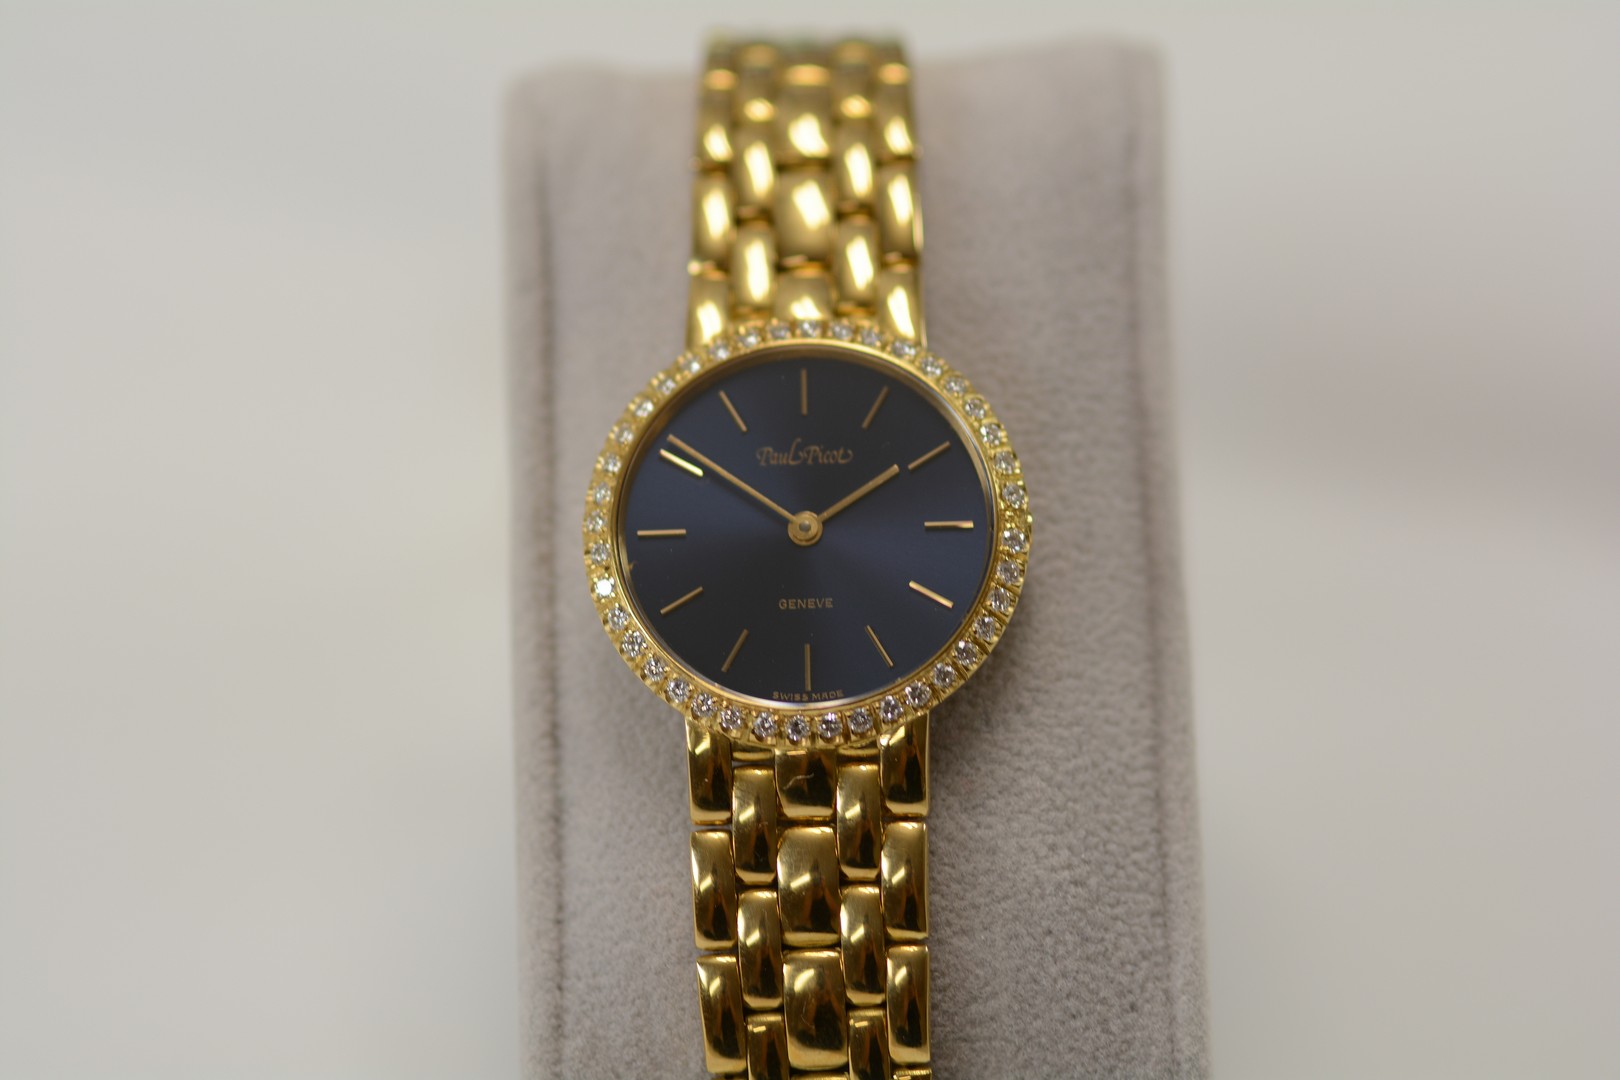 Paul Picot / Diamond - Lady's Yellow gold Wrist Watch - Image 6 of 16